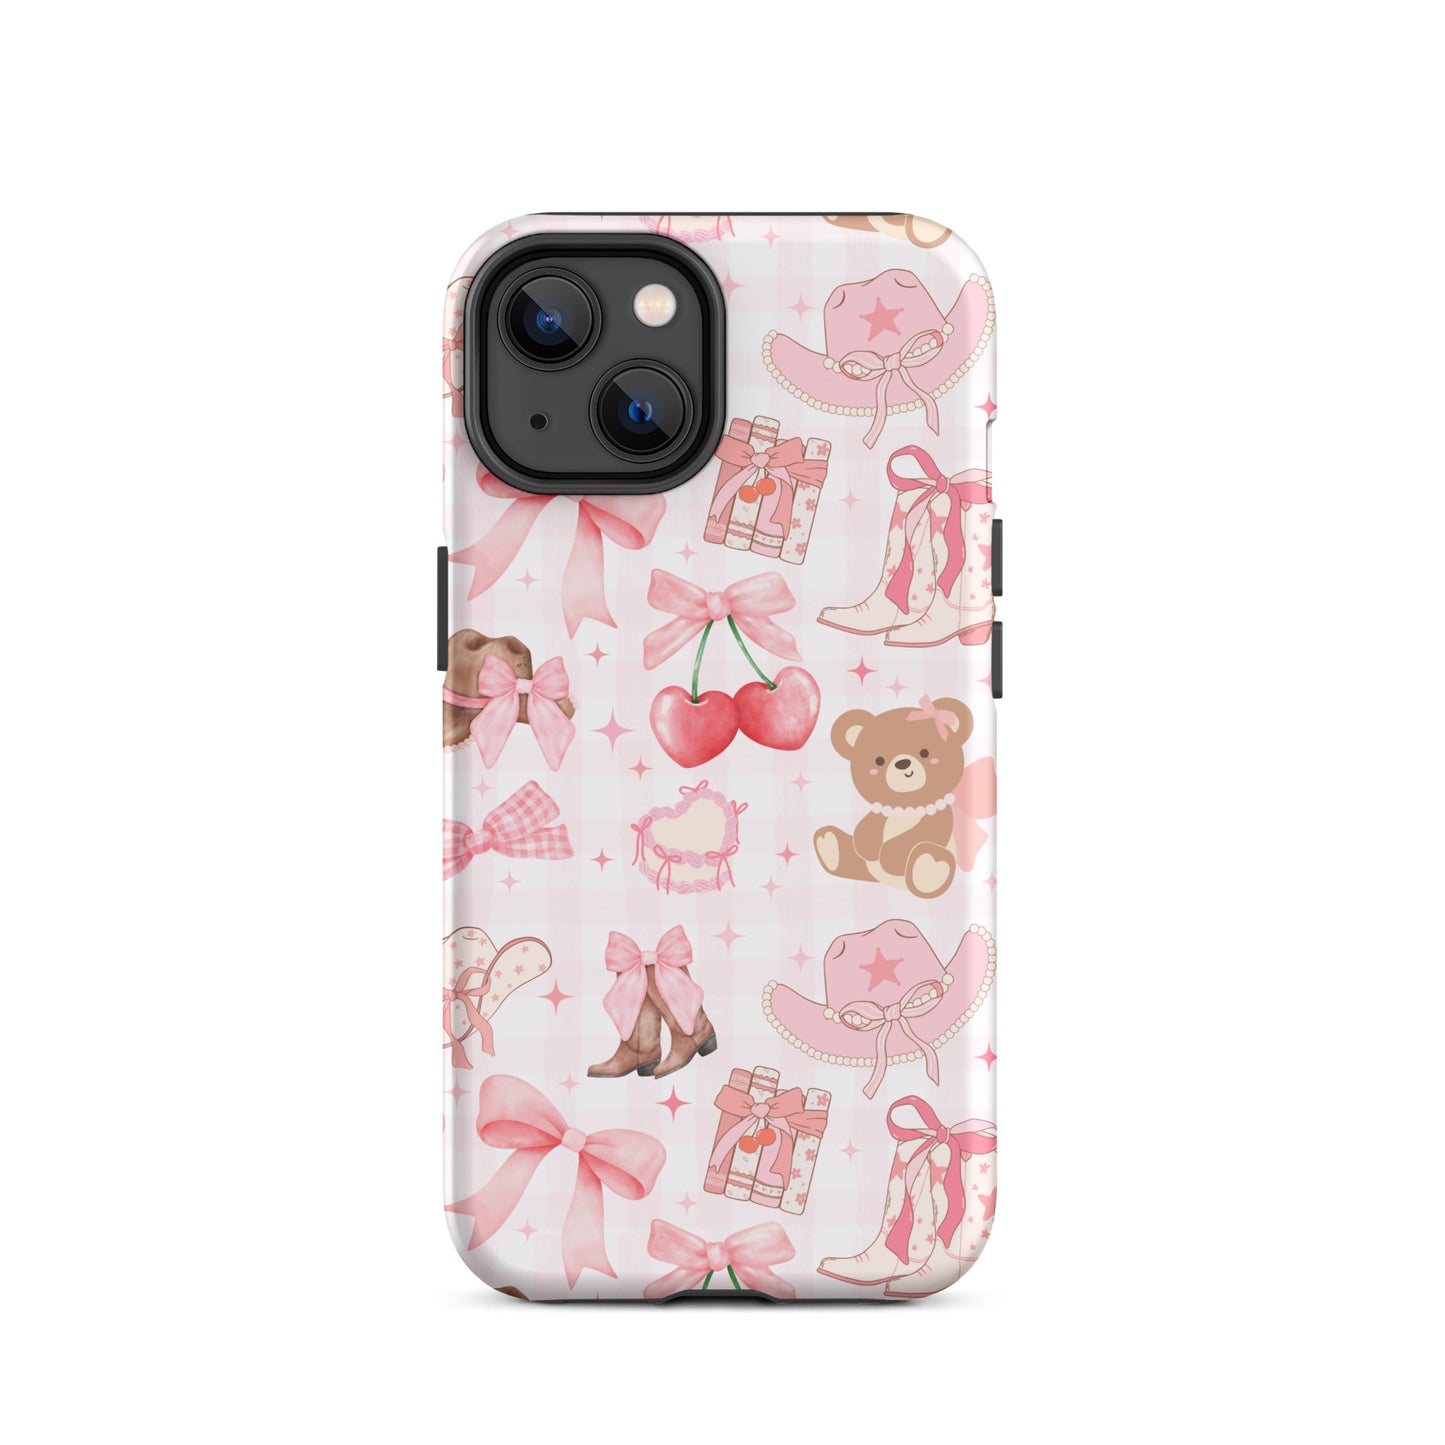 Coquette Wonderland iPhone Case